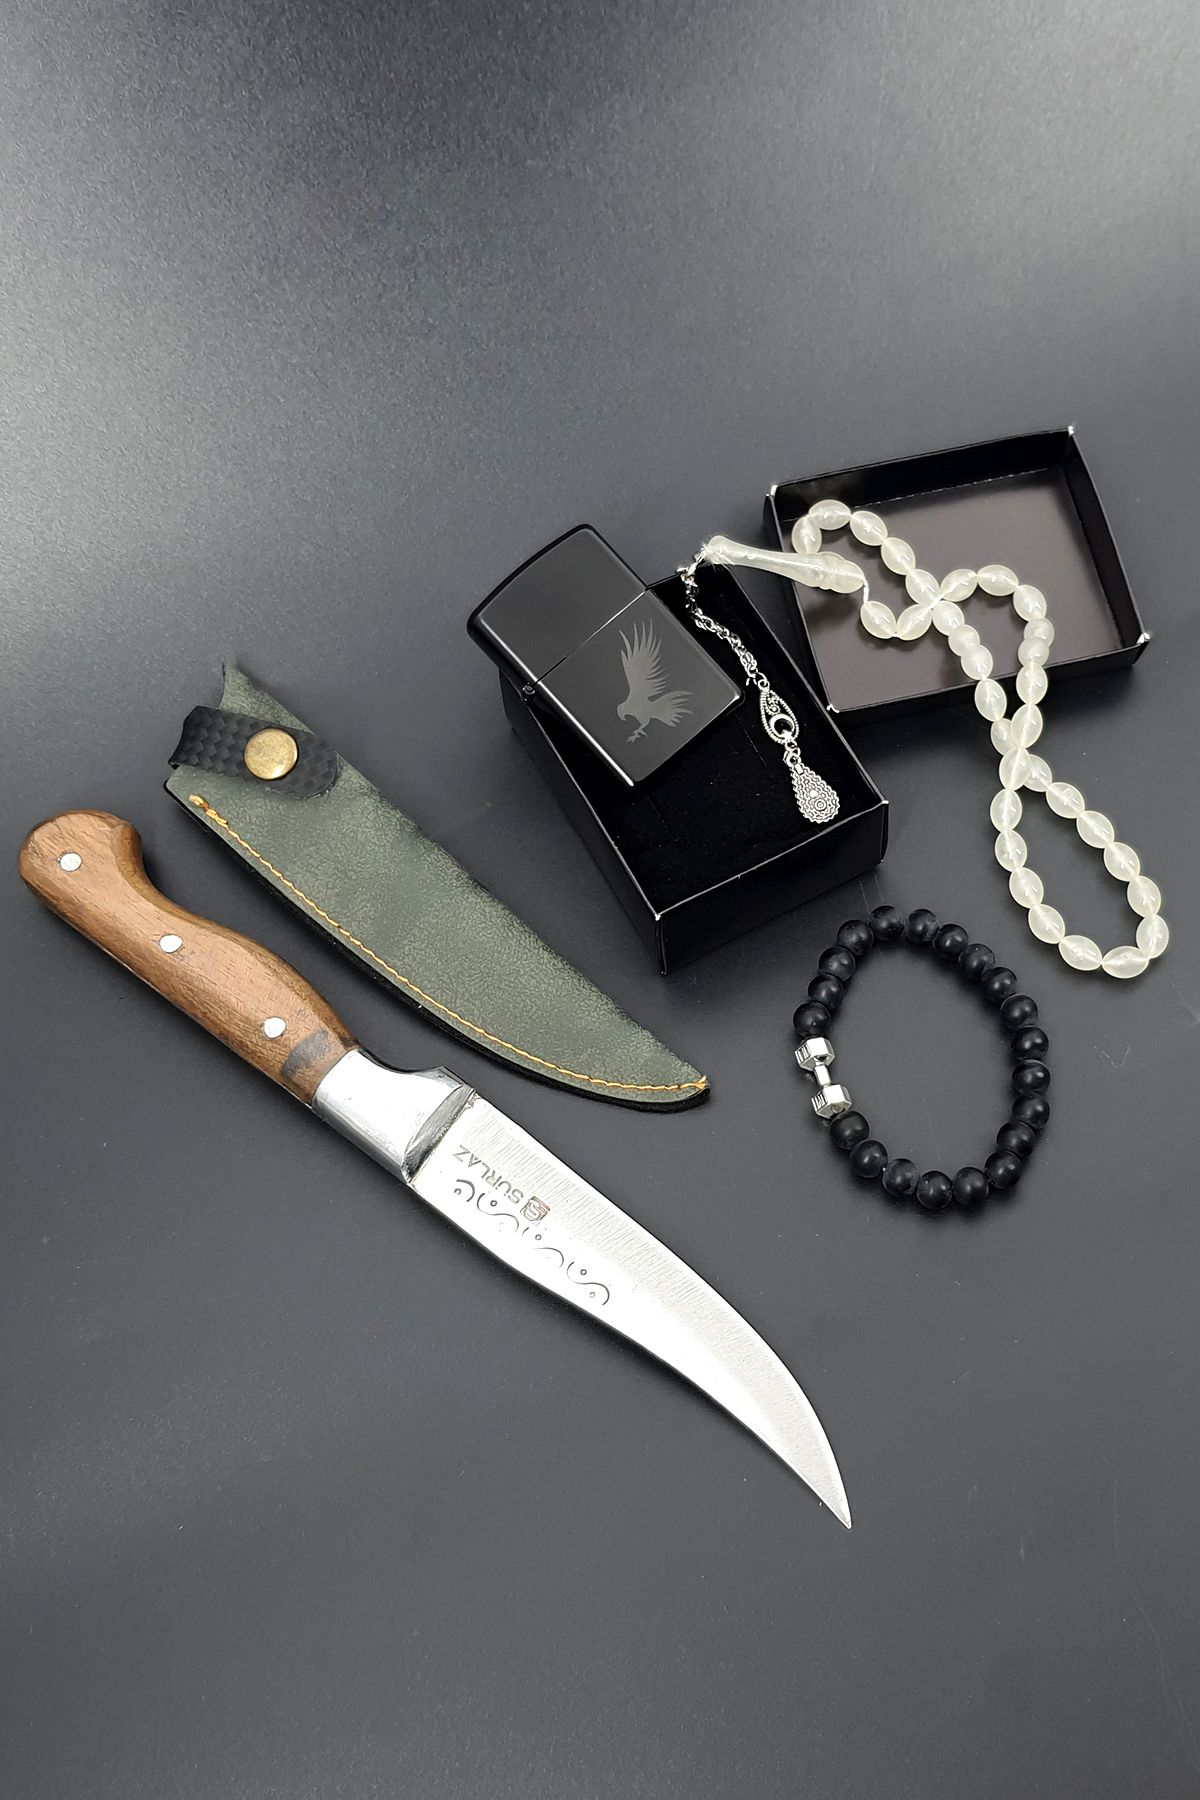 SürLaz Kamp Bıçağı Outdoor Bıçak Seti Çakmak Hediyelik Set 4 Parça Özel İşlemeli